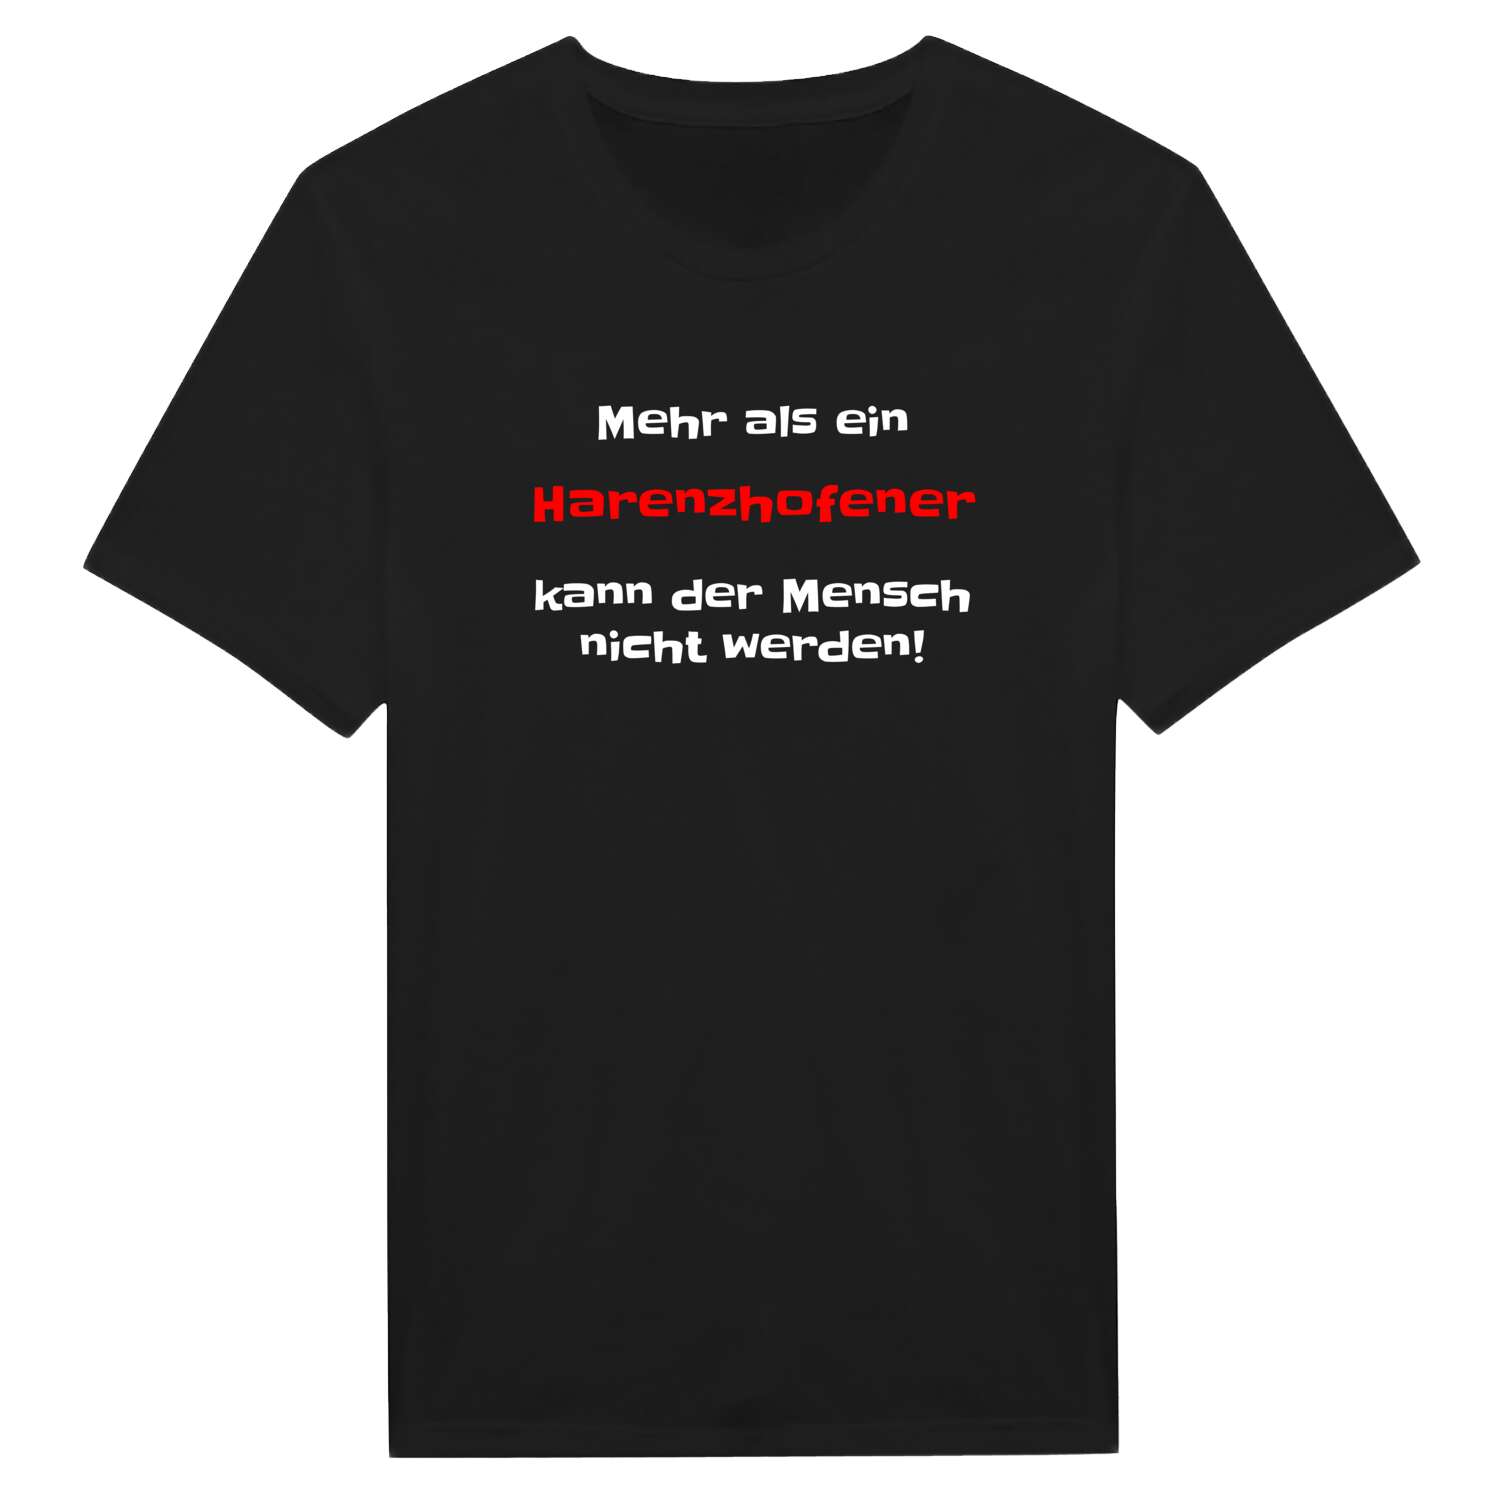 Harenzhofen T-Shirt »Mehr als ein«